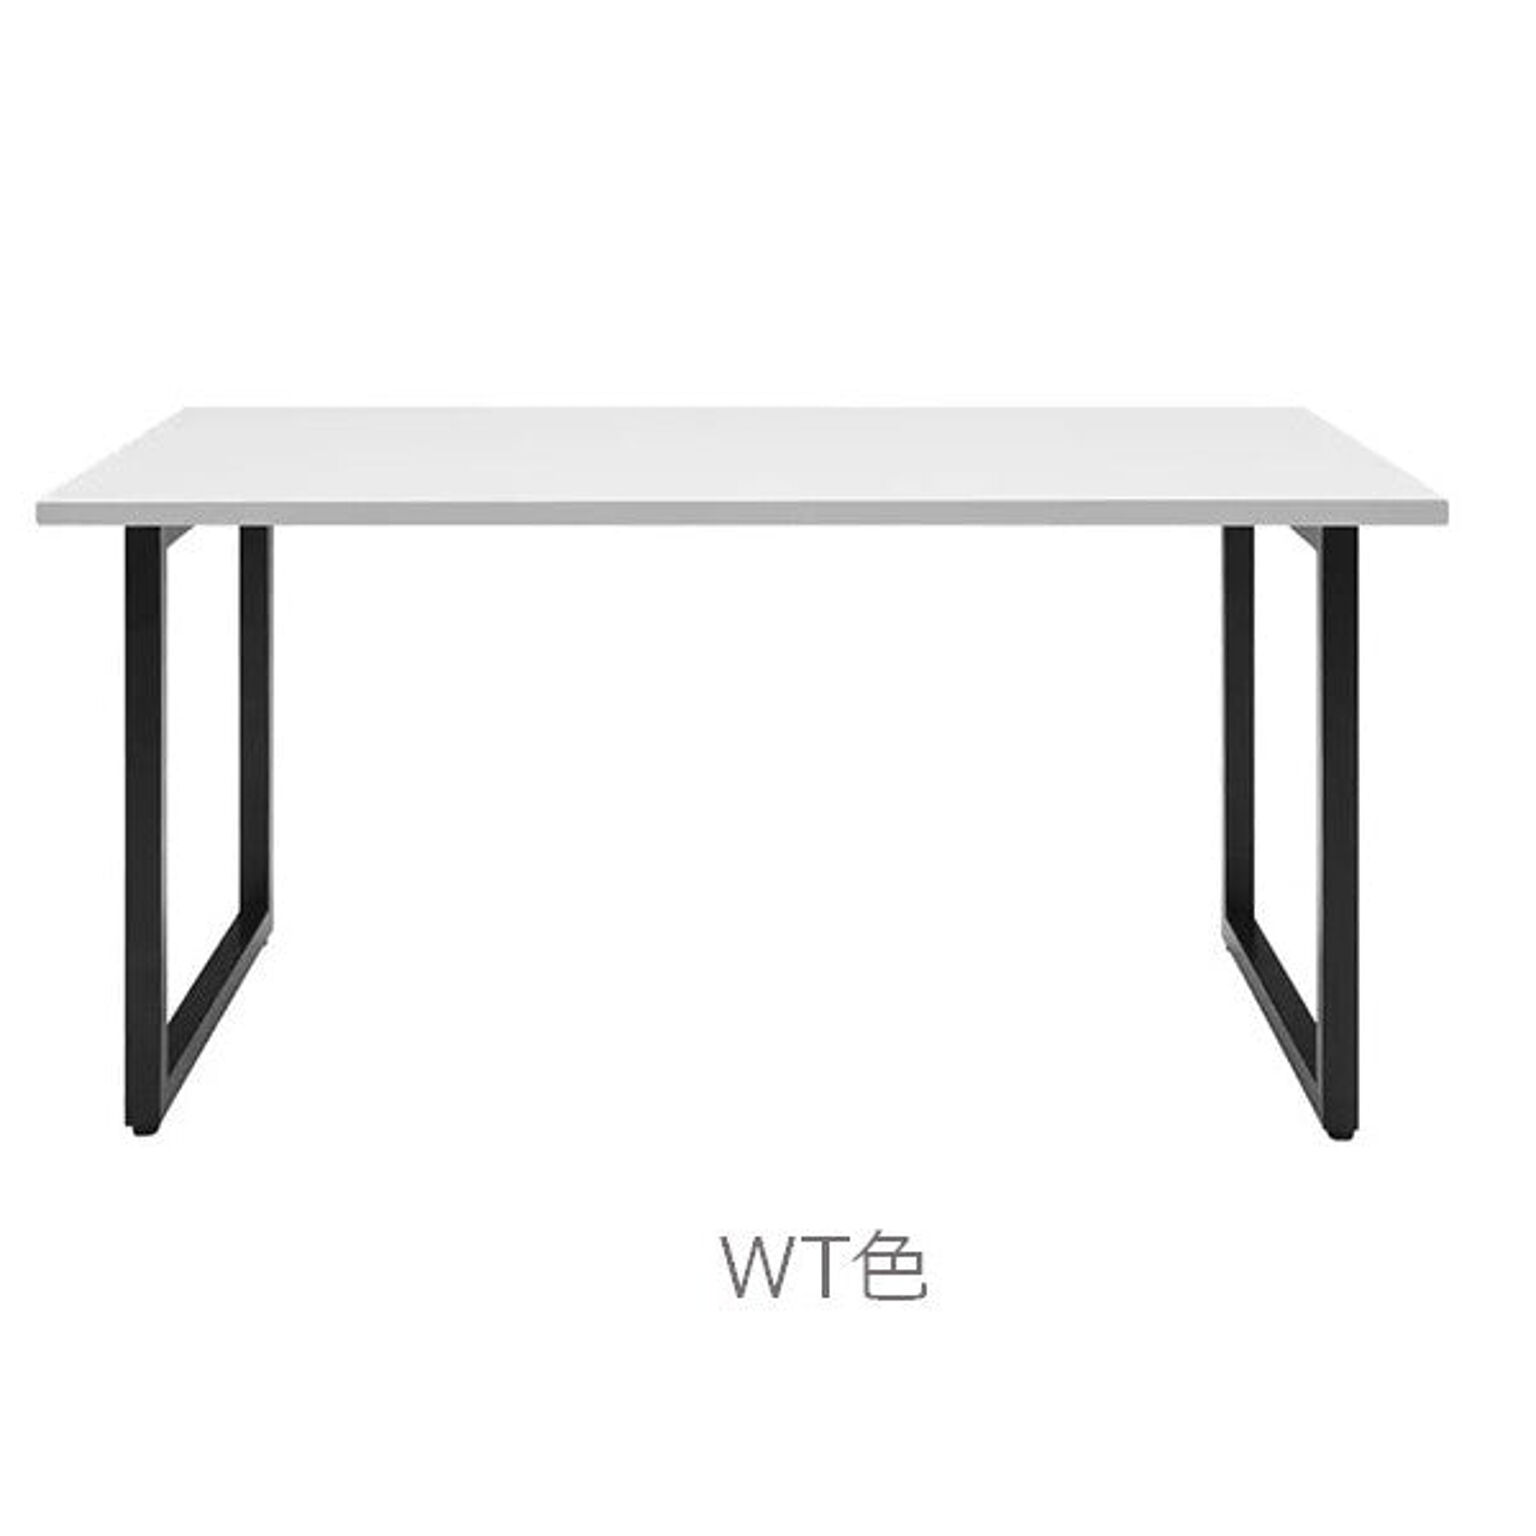 ダイニングテーブル 幅150 高さ72 天然木ウレタン塗装 ブラックアイアン シンプル スッキリ デザイン 作業テーブル RAMA ラマ RMA-150